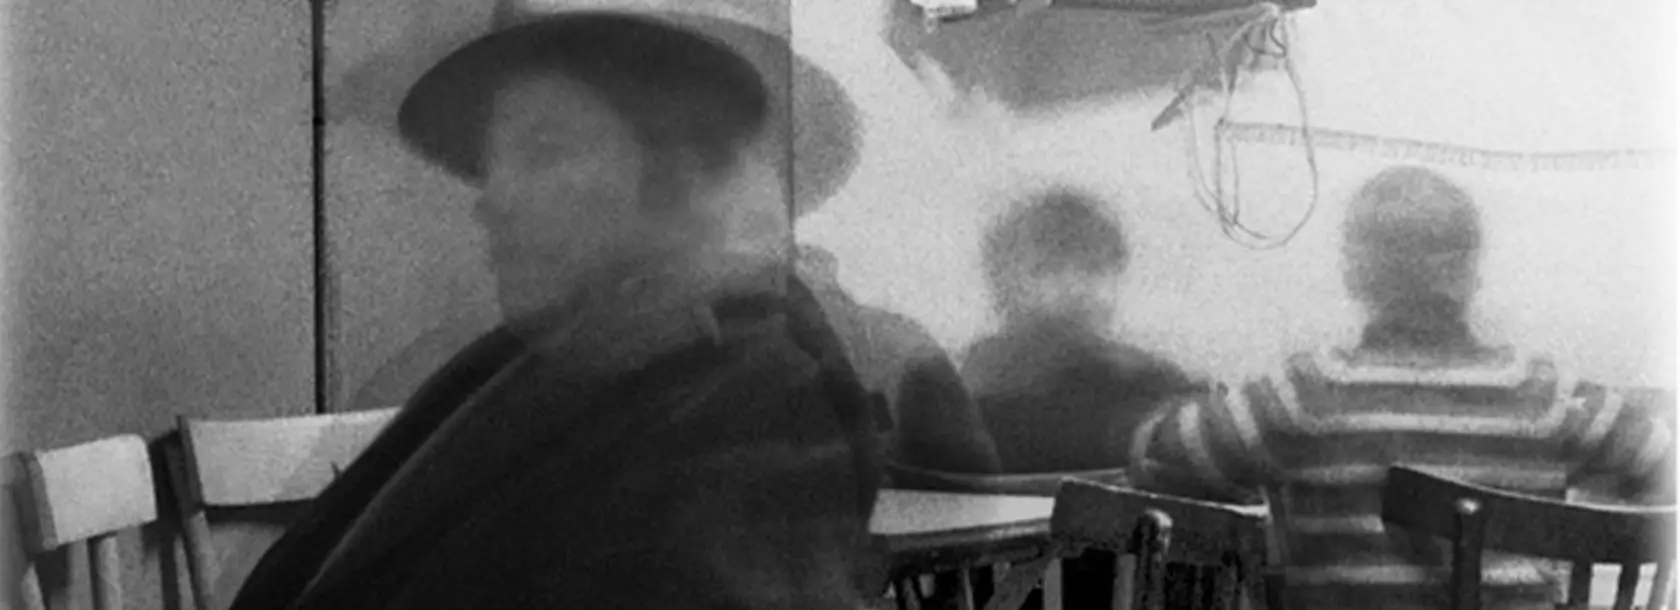 Fotografia in bianco e nero “Interni mossi” Tricarico 1967 di Mario Cresci.